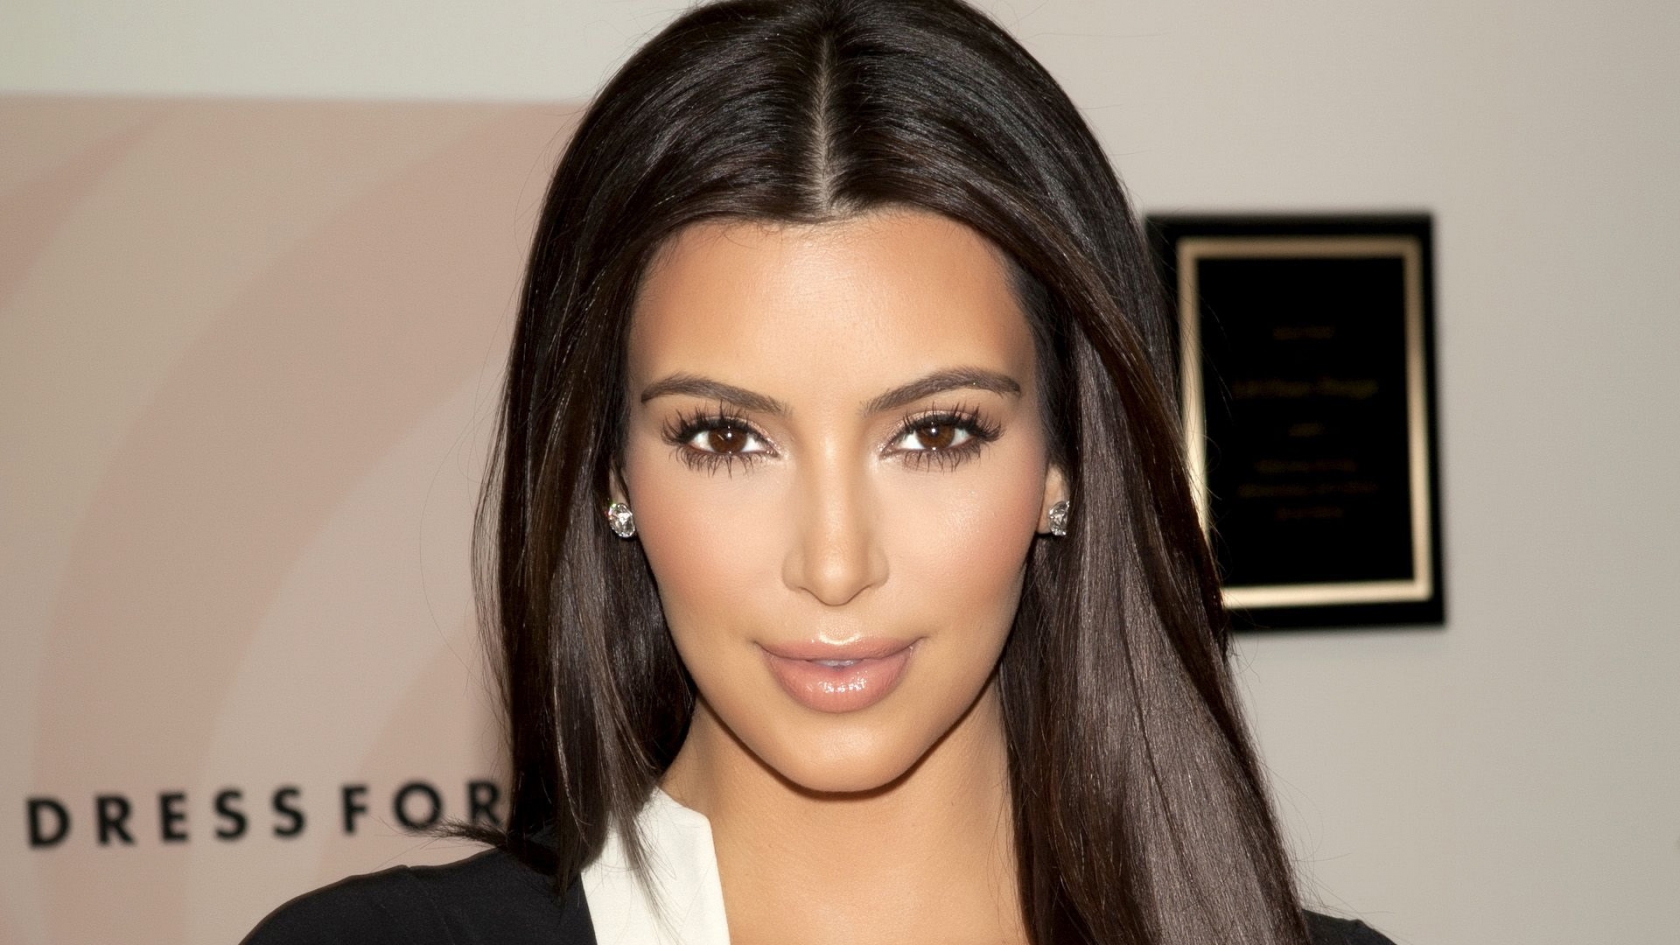 Gorgeous Kim Kardashian for 1680 x 945 HDTV resolution